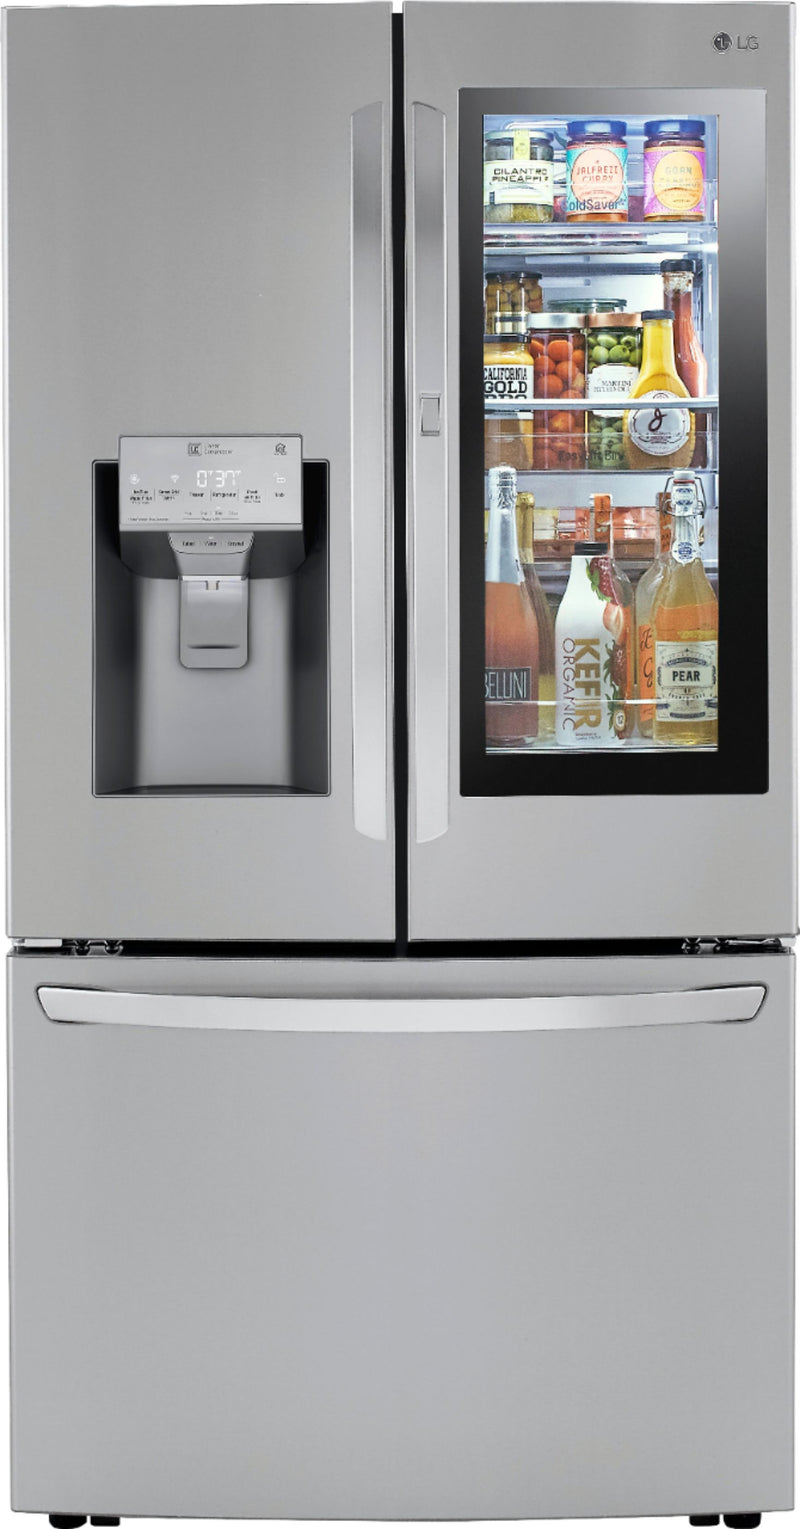 LG LRFVS3006S 29.7 Cu. Ft. French InstaView Door-in-Door Refrigerator